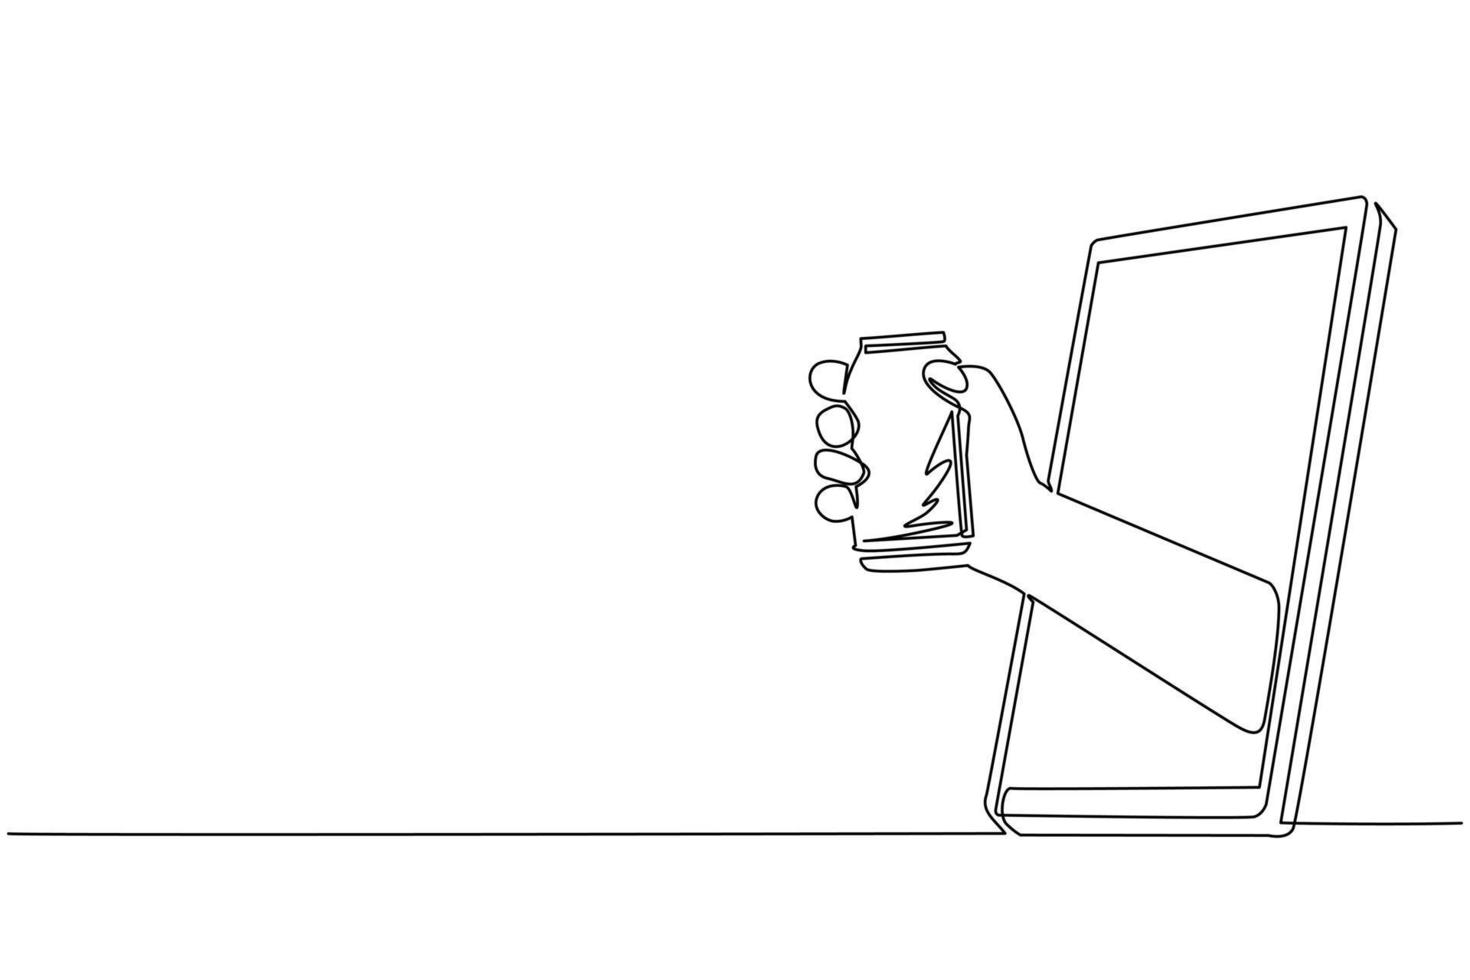 mano de dibujo continuo de una línea que sostiene la lata de refresco a través del teléfono móvil. concepto de comida en línea de entrega de pedidos de bebidas de café. aplicación para teléfonos inteligentes. ilustración gráfica de vector de diseño de línea única